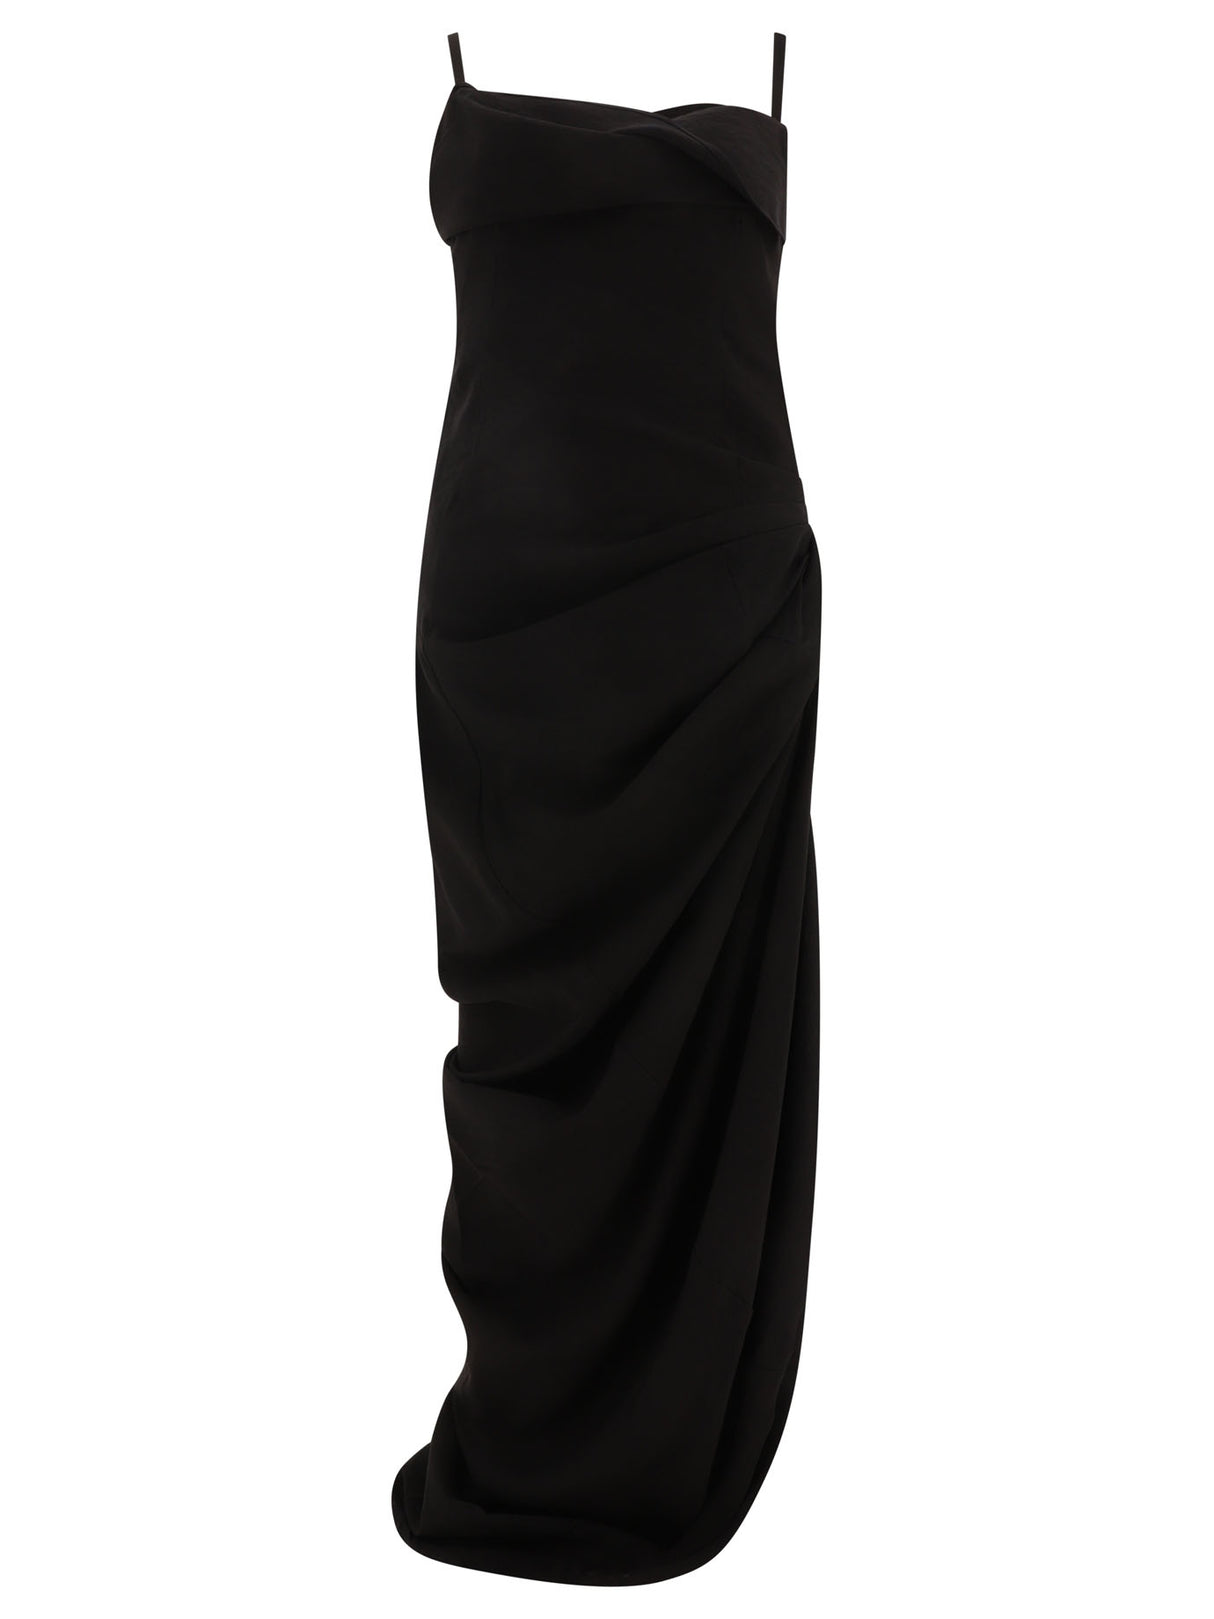 ブラックドレープスリムフィットドレス with 調整可能ストラップ and オープンバック for 婦人